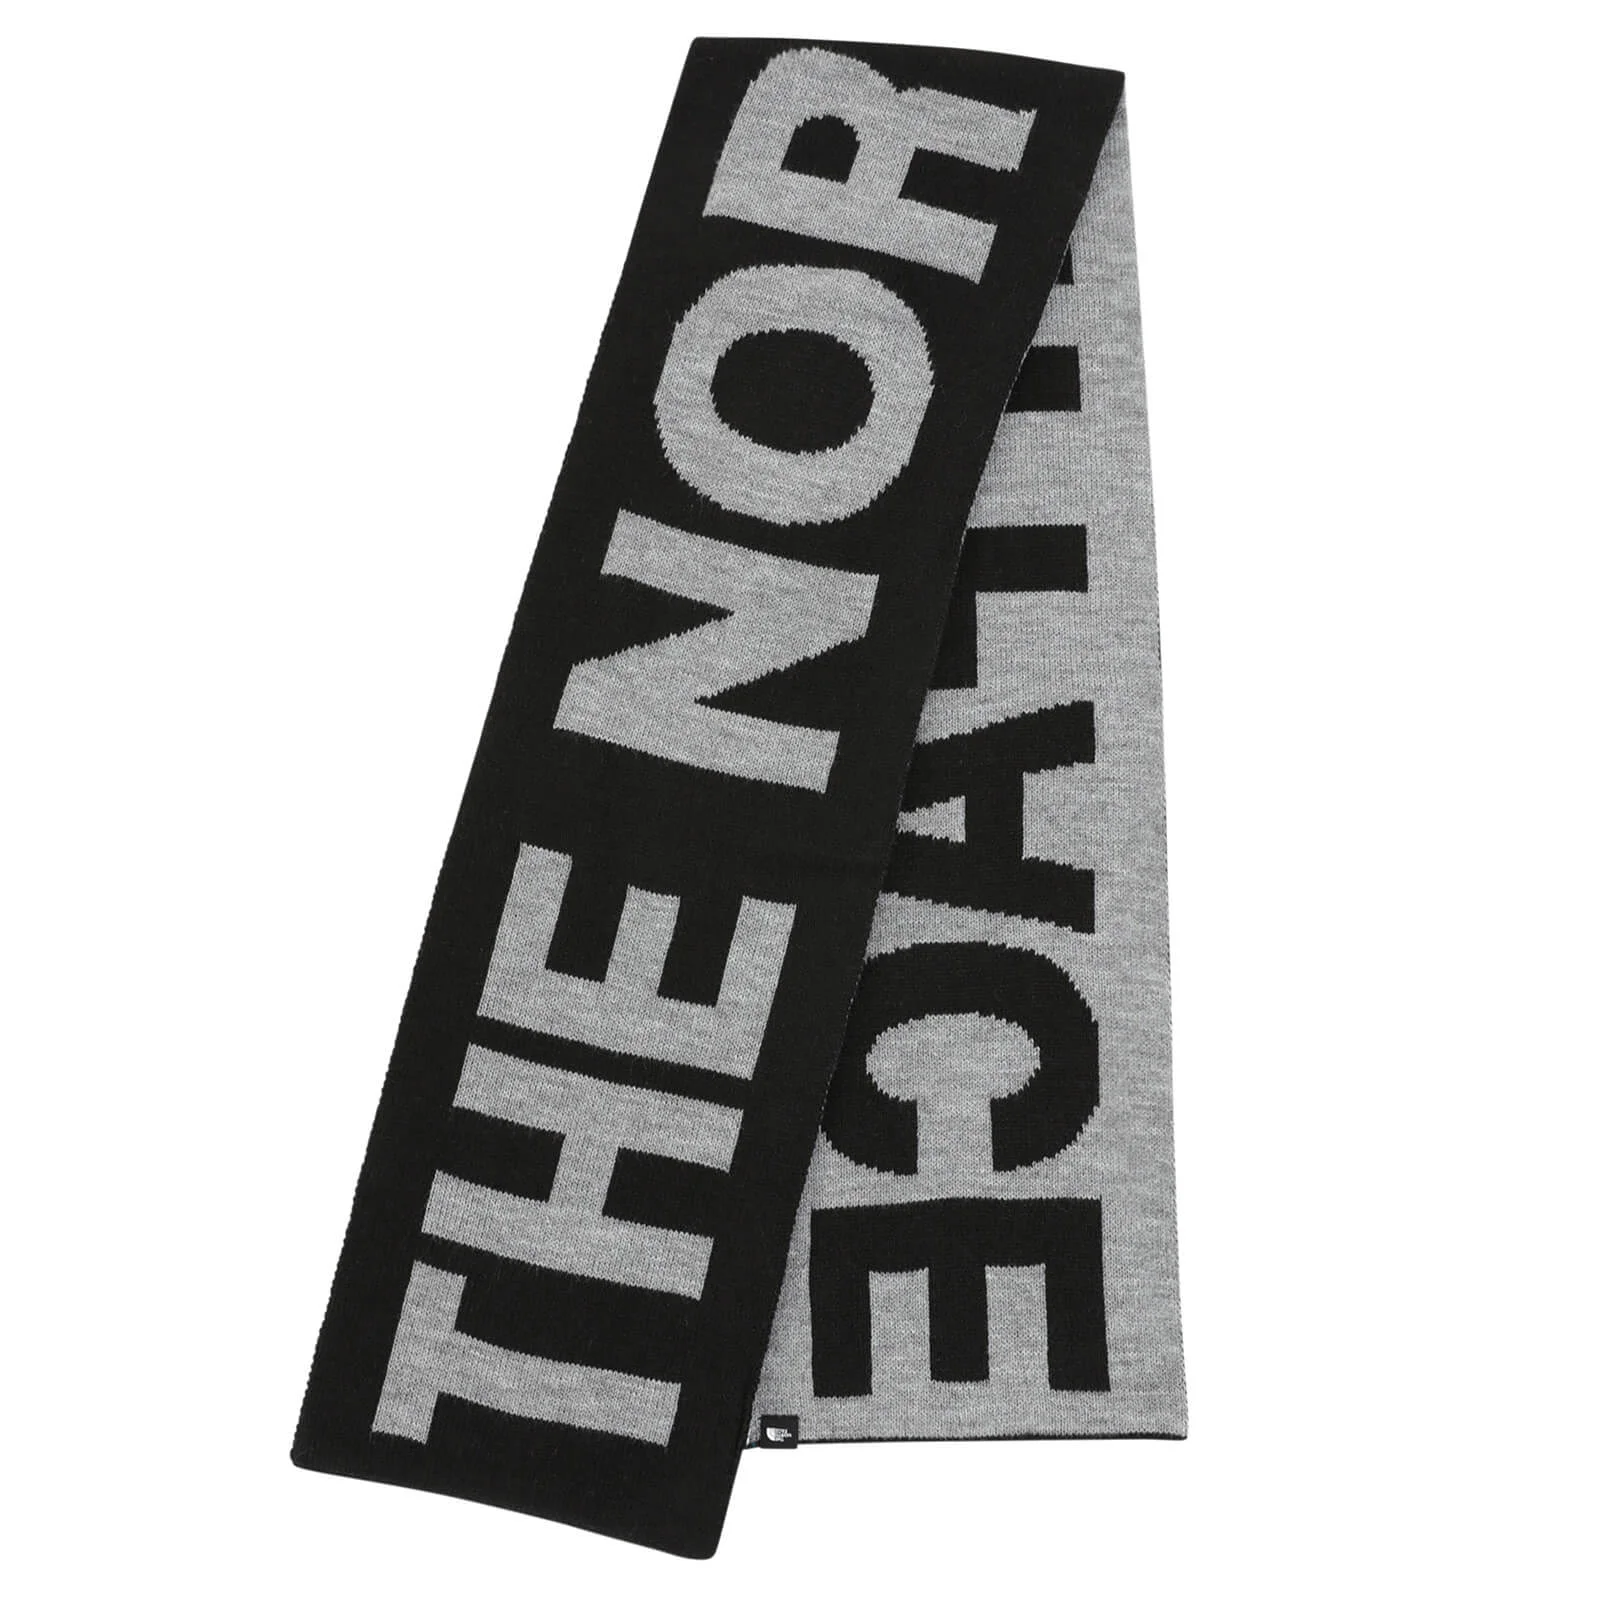 The North Face Men's Logo Scarf - TNF Black/TNF Medium Grey Image 1